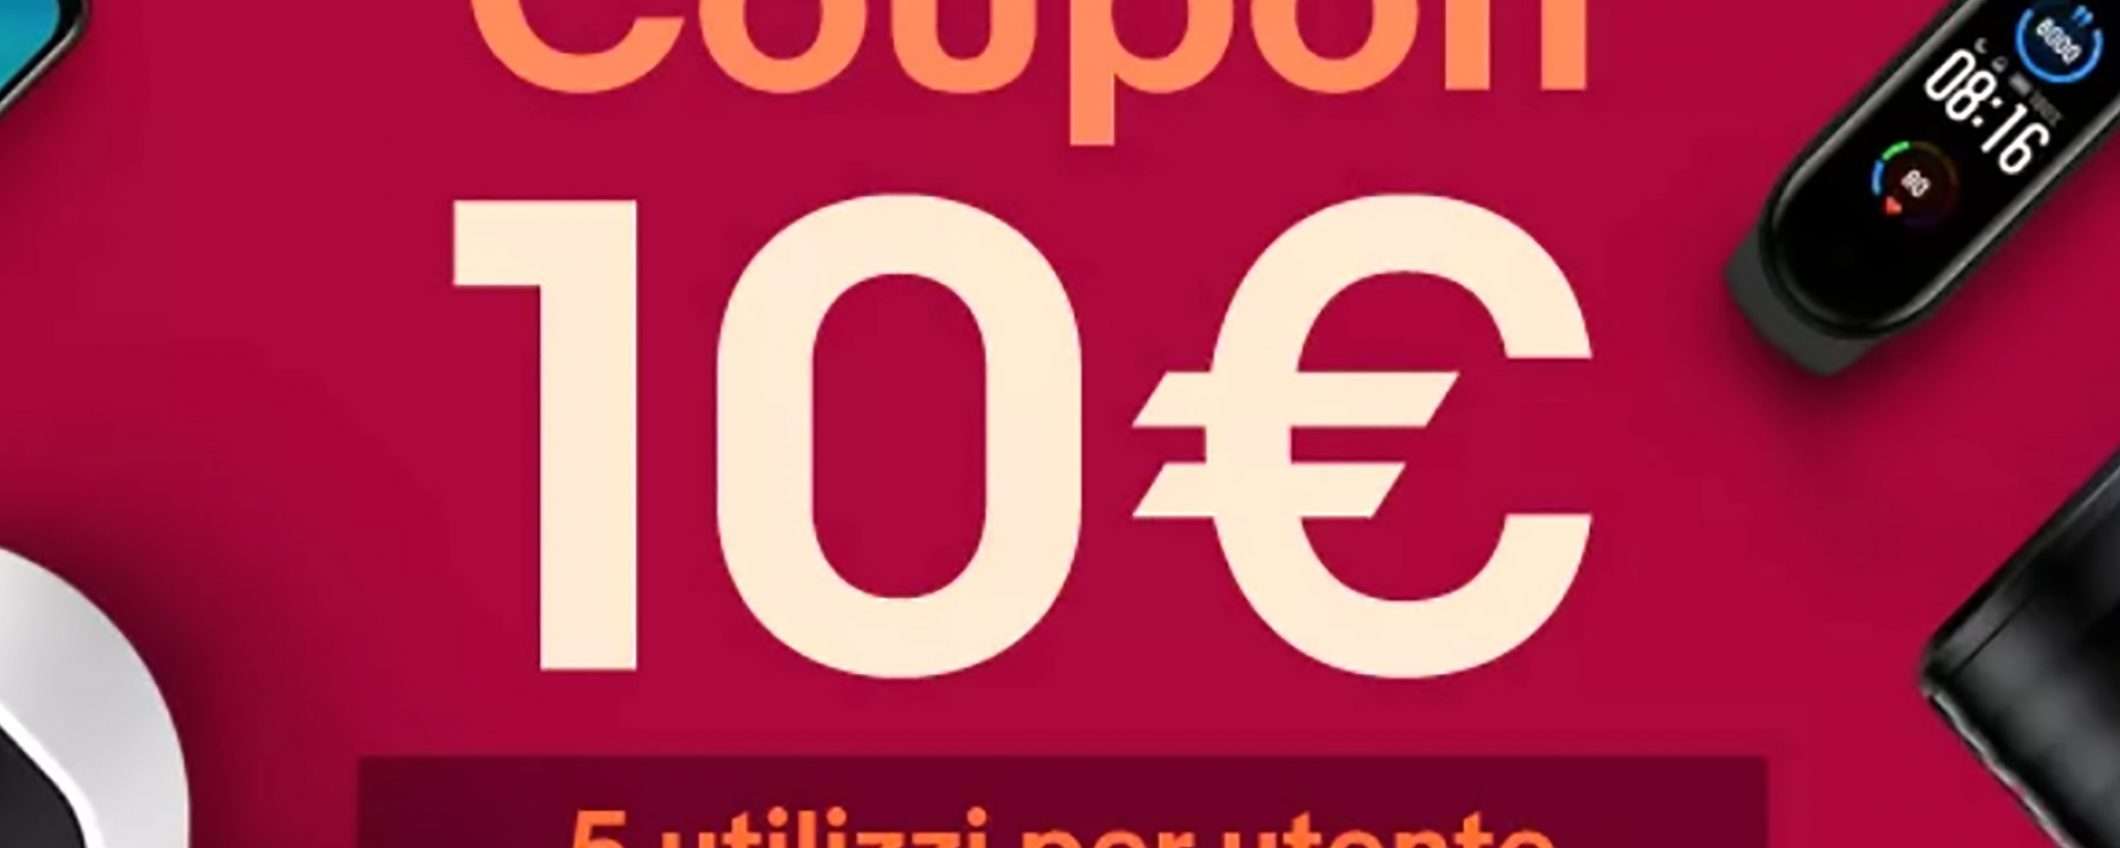 10 euro di sconto su eBay con questo coupon